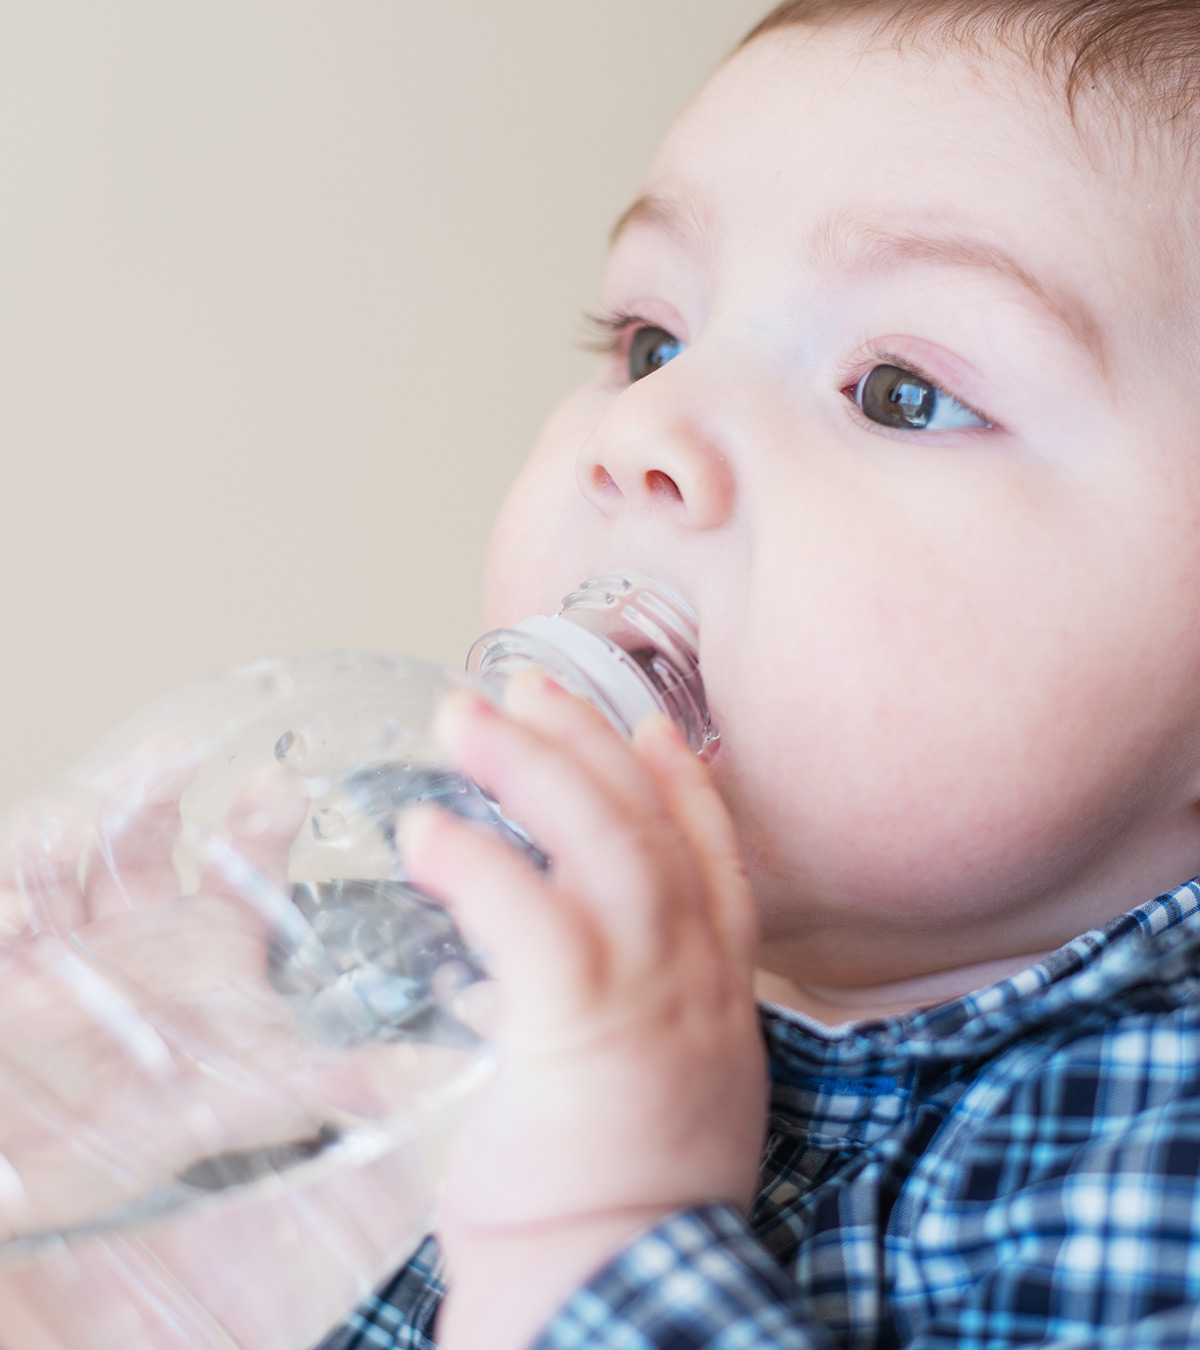 婴儿瓶装水:什么时候可以喝?瓶装水和婴儿水有什么不同?